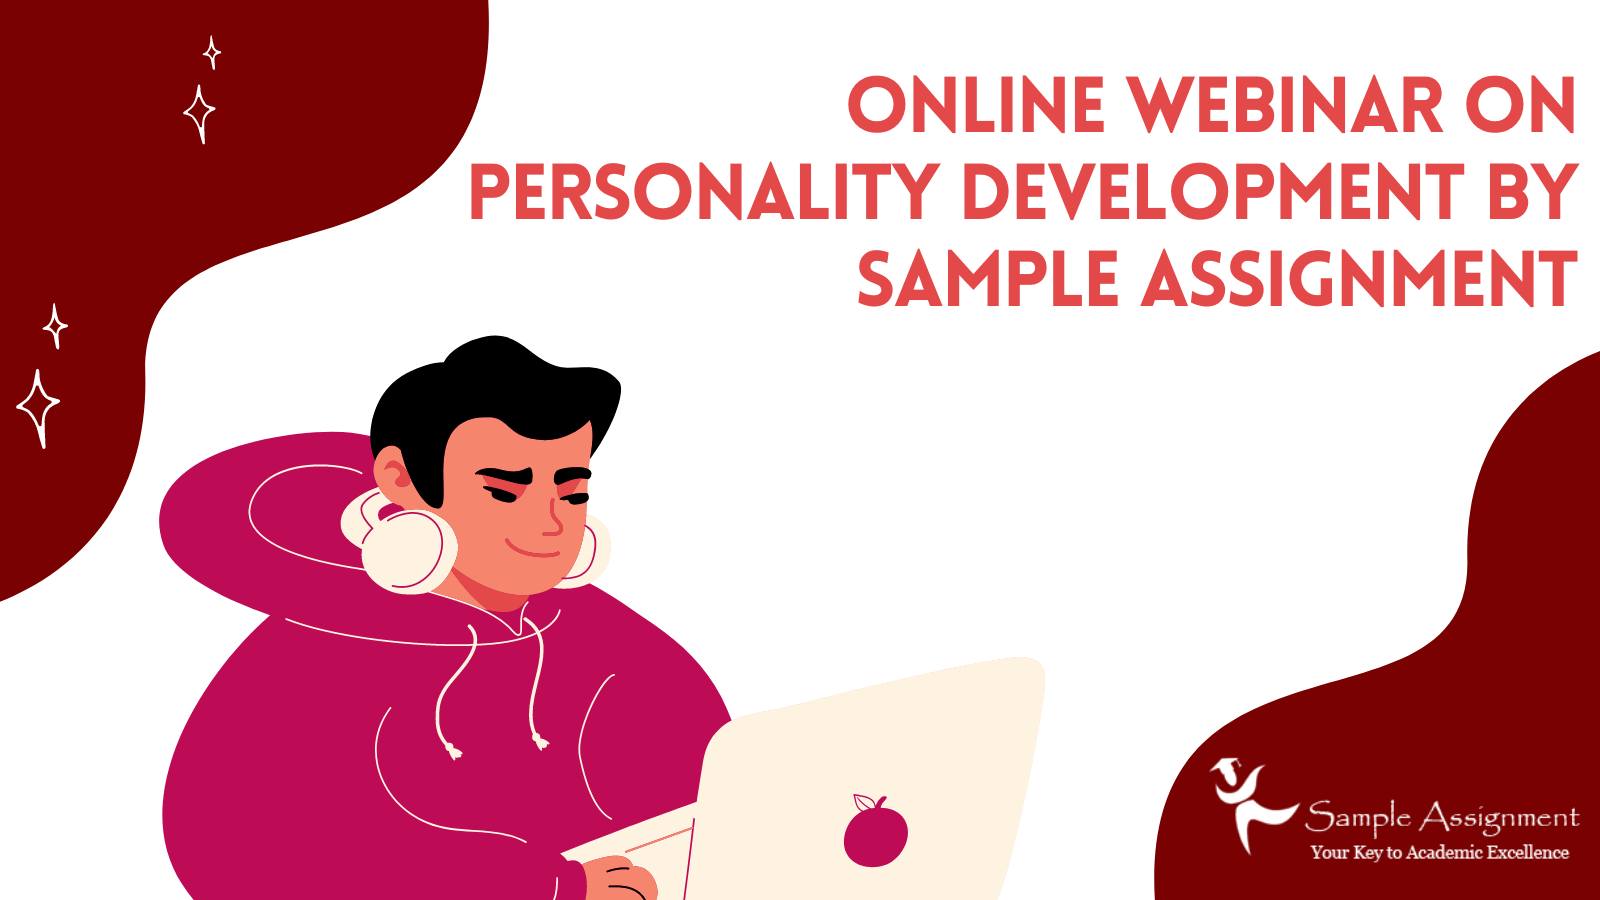 Online Webinar on Personality Development